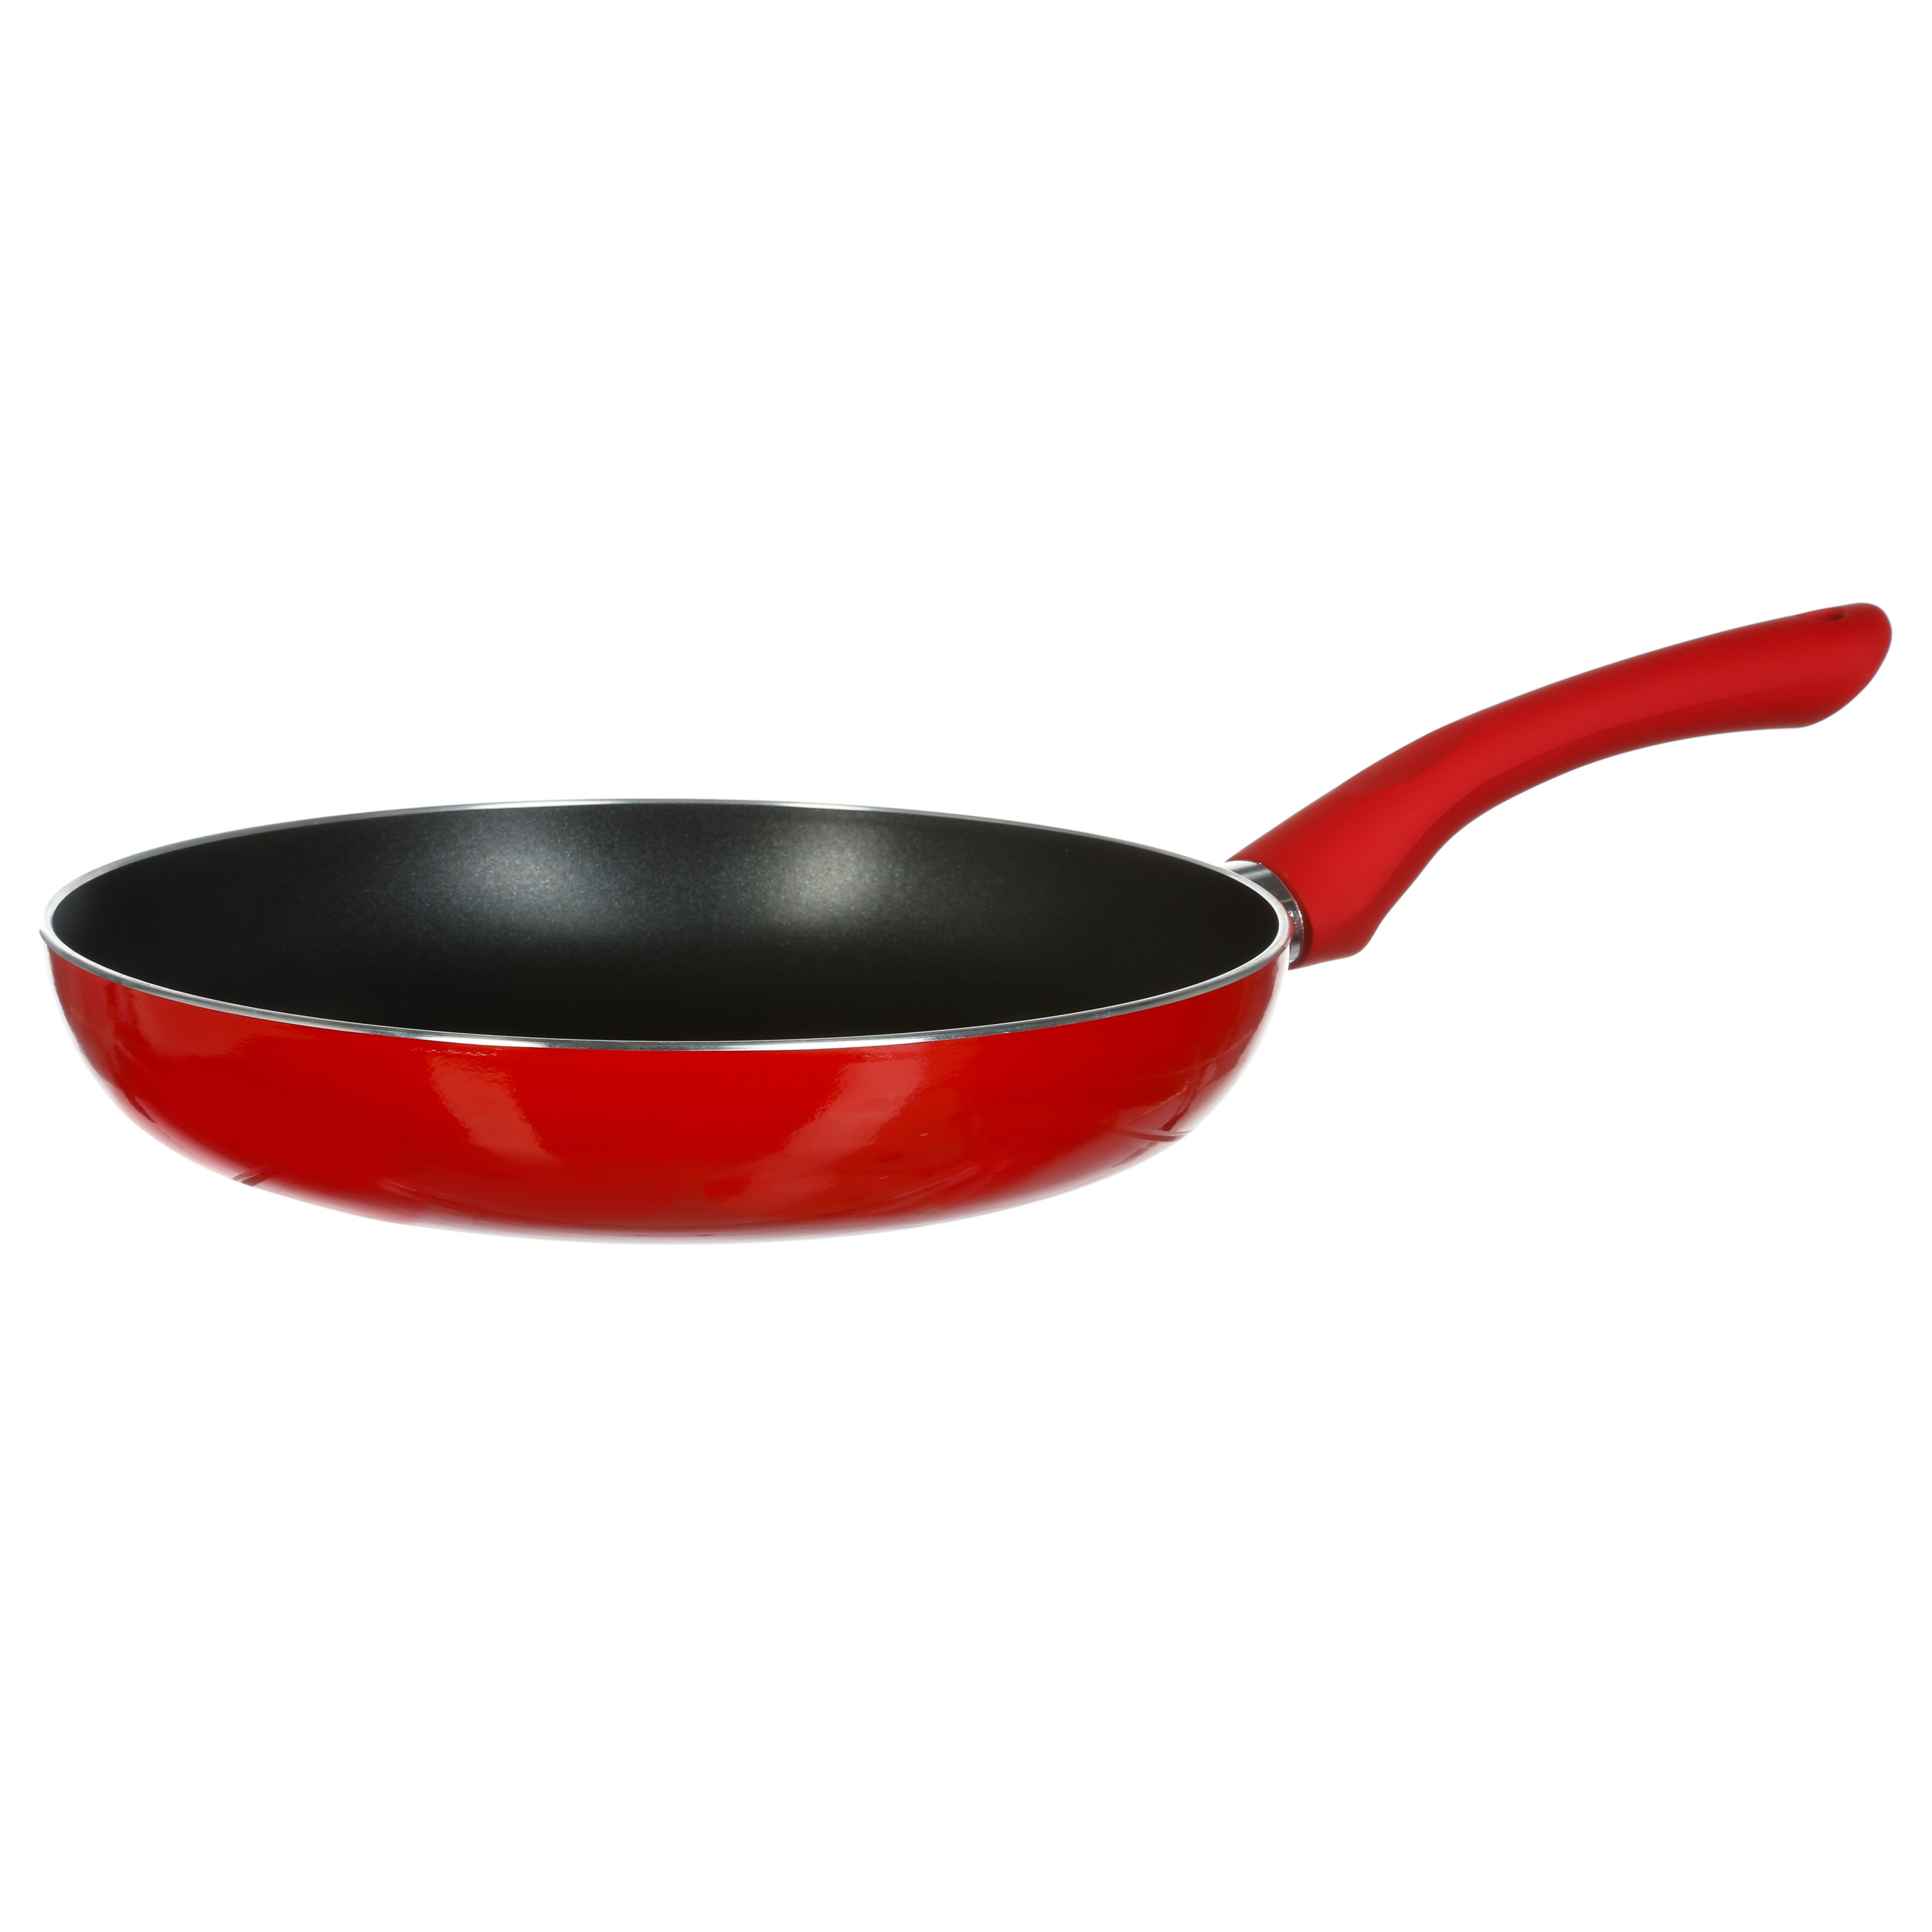 Koekenpan Alle kookplaten geschikt rood-zwart dia 24 cm